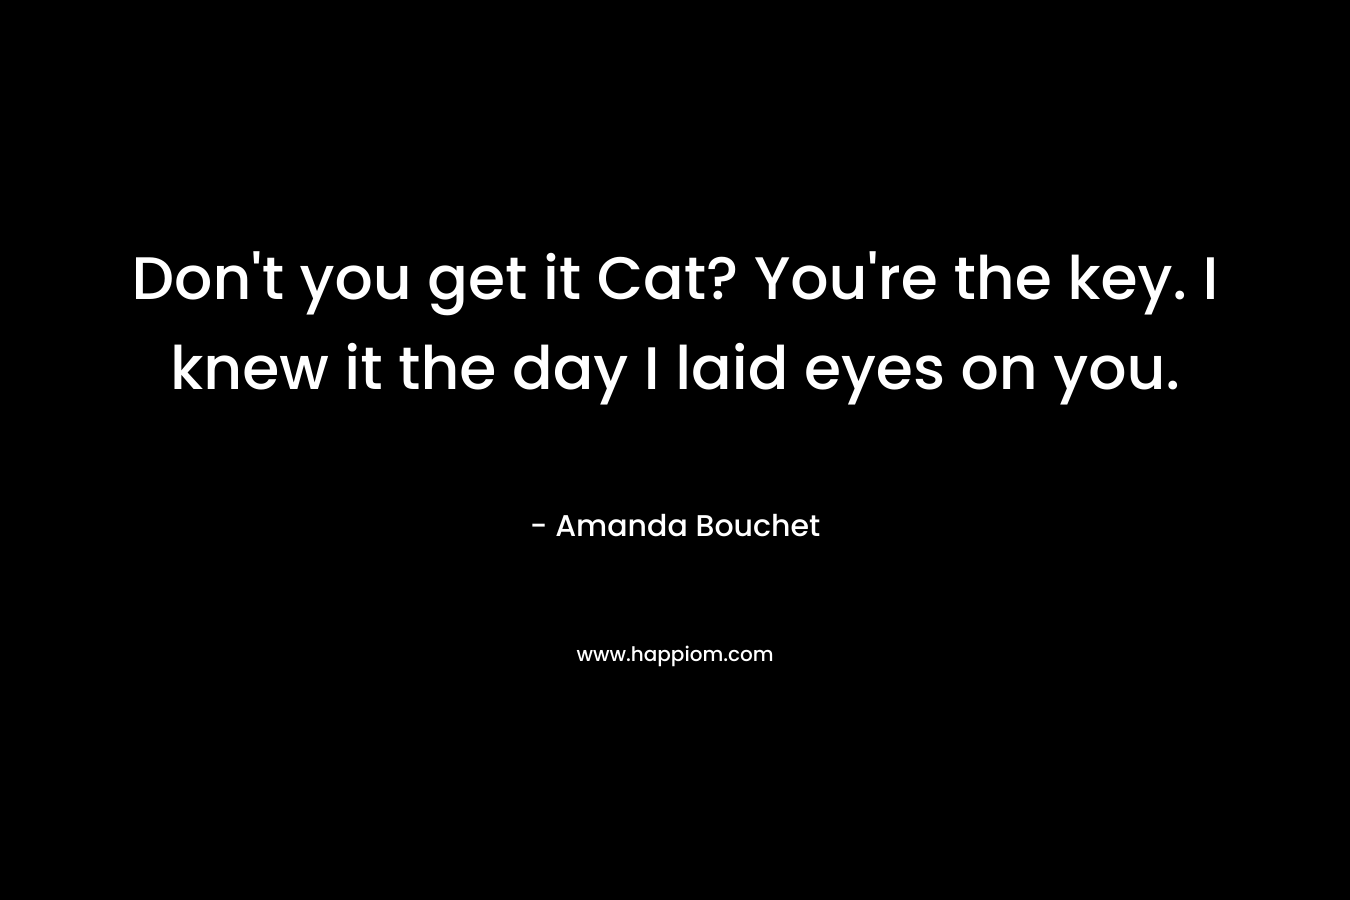 Don't you get it Cat? You're the key. I knew it the day I laid eyes on you.